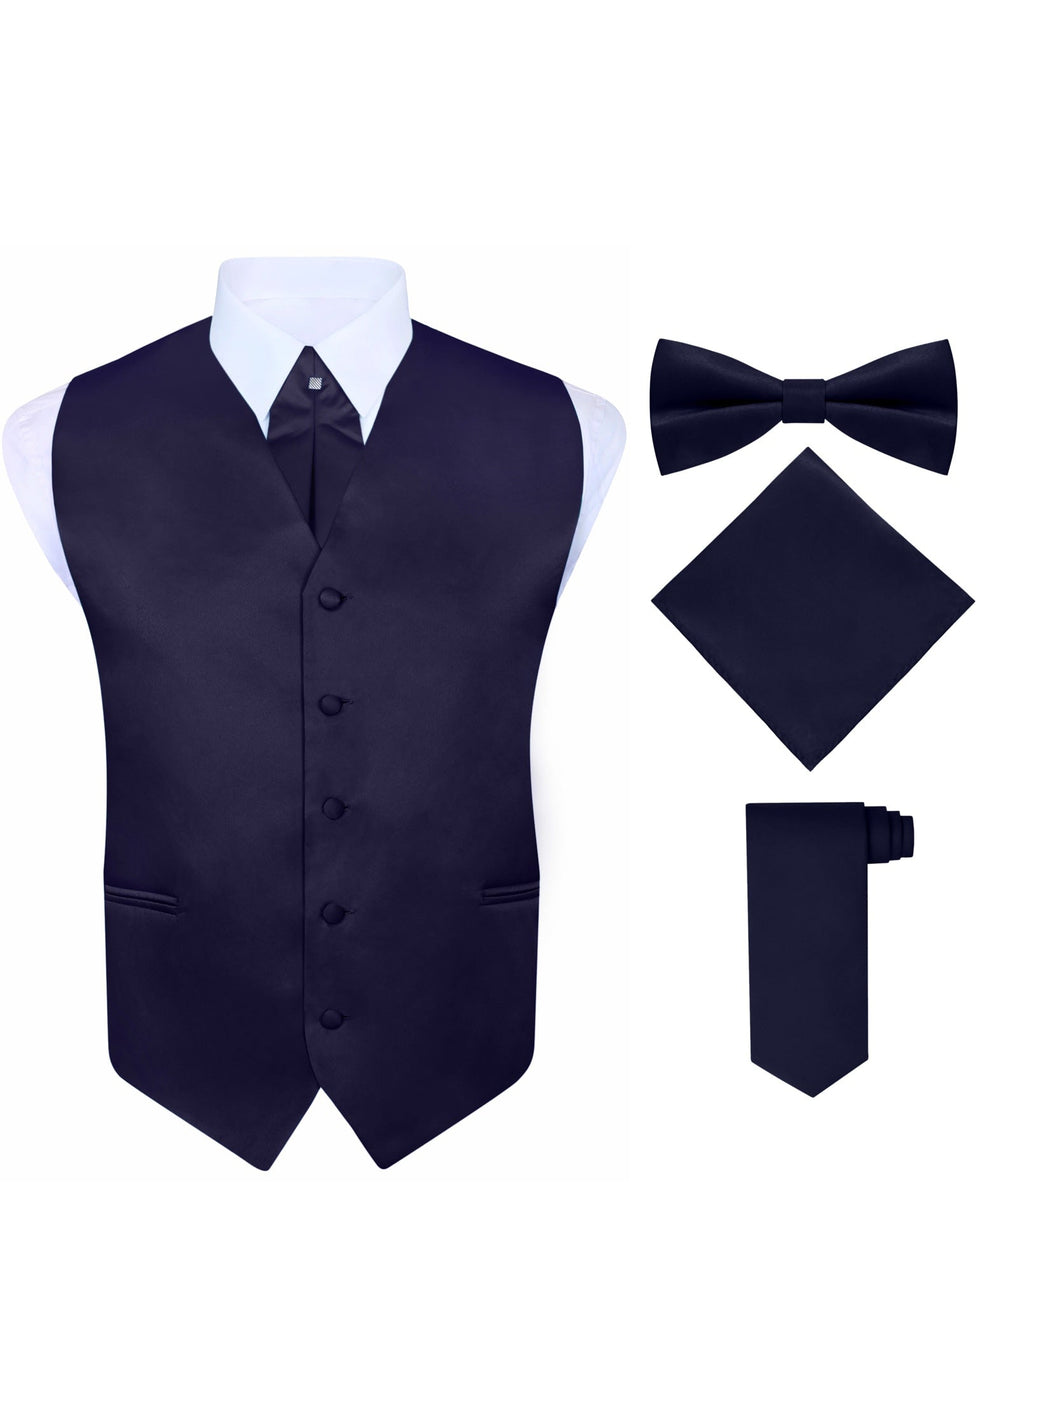 S.H. Churchill & Co. Men's 5 Piece Vest Set, with Cravat, Bow Tie, Neck Tie & Pocket Hanky-Navy Blue